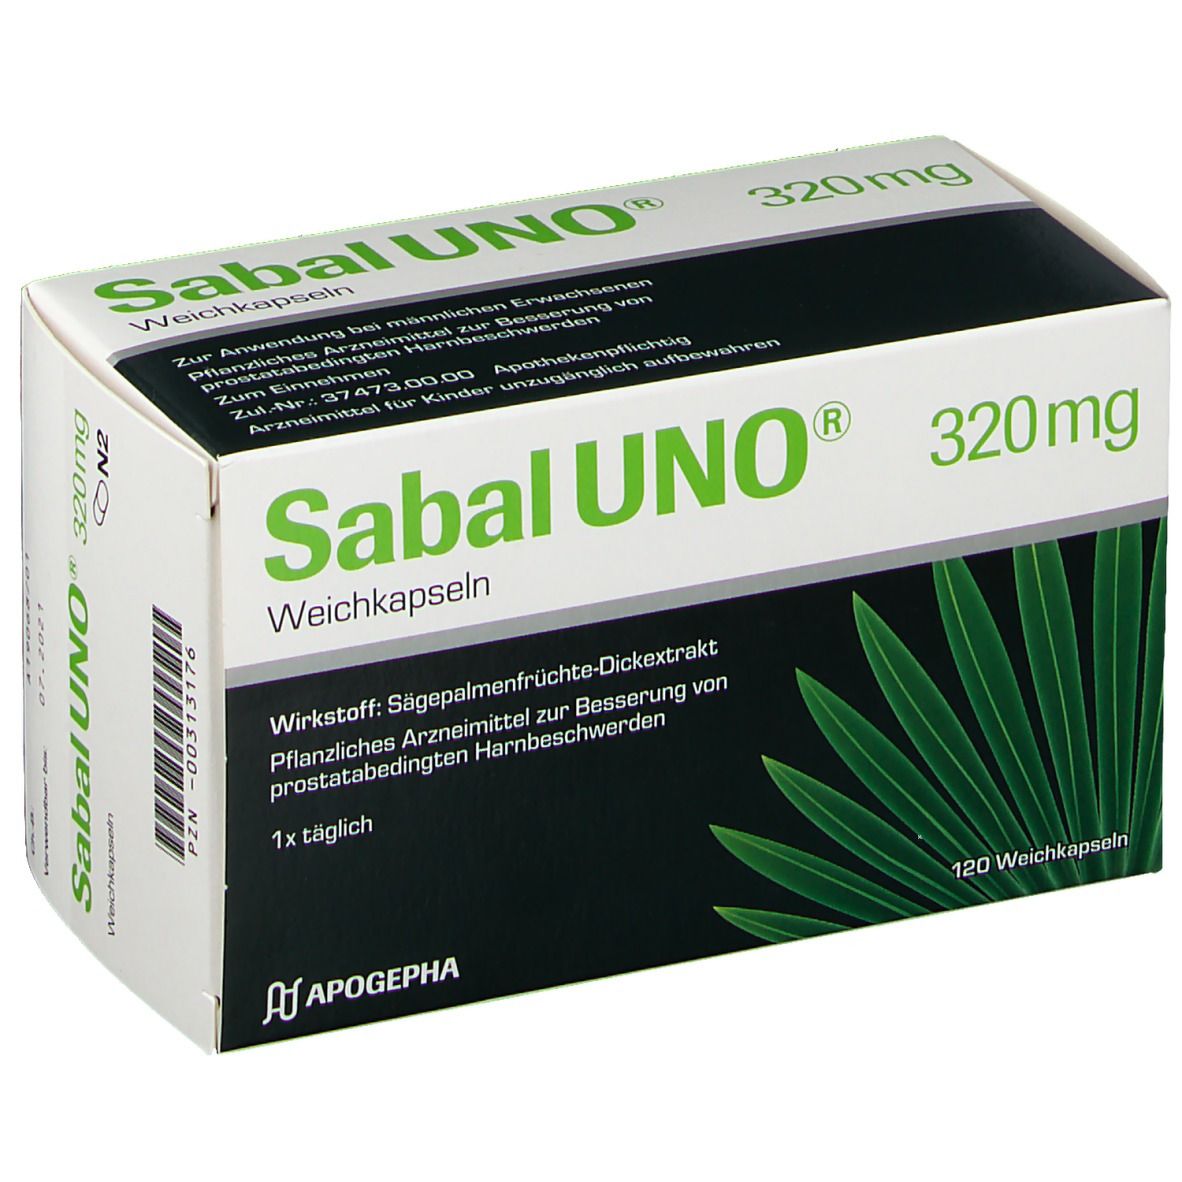 SabalUNO® 320mg Weichkapseln